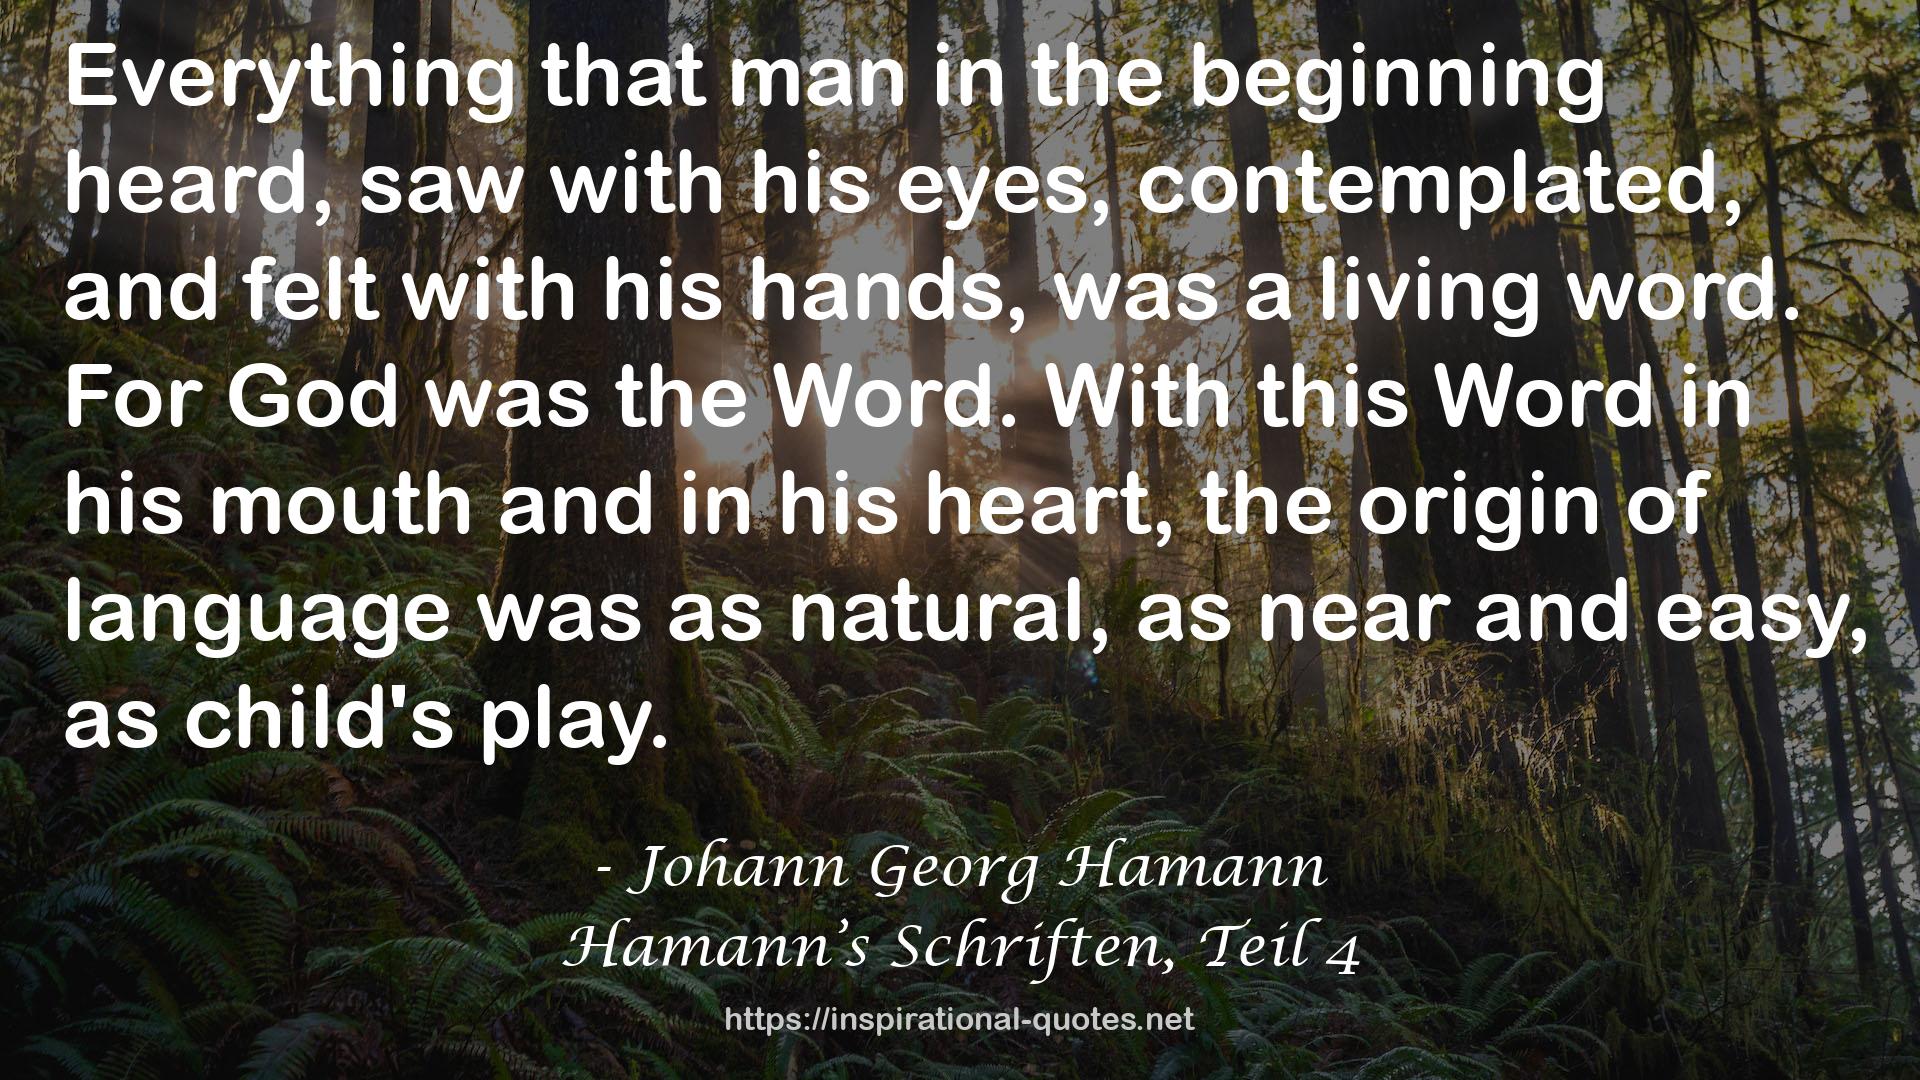 Hamann’s Schriften, Teil 4 QUOTES